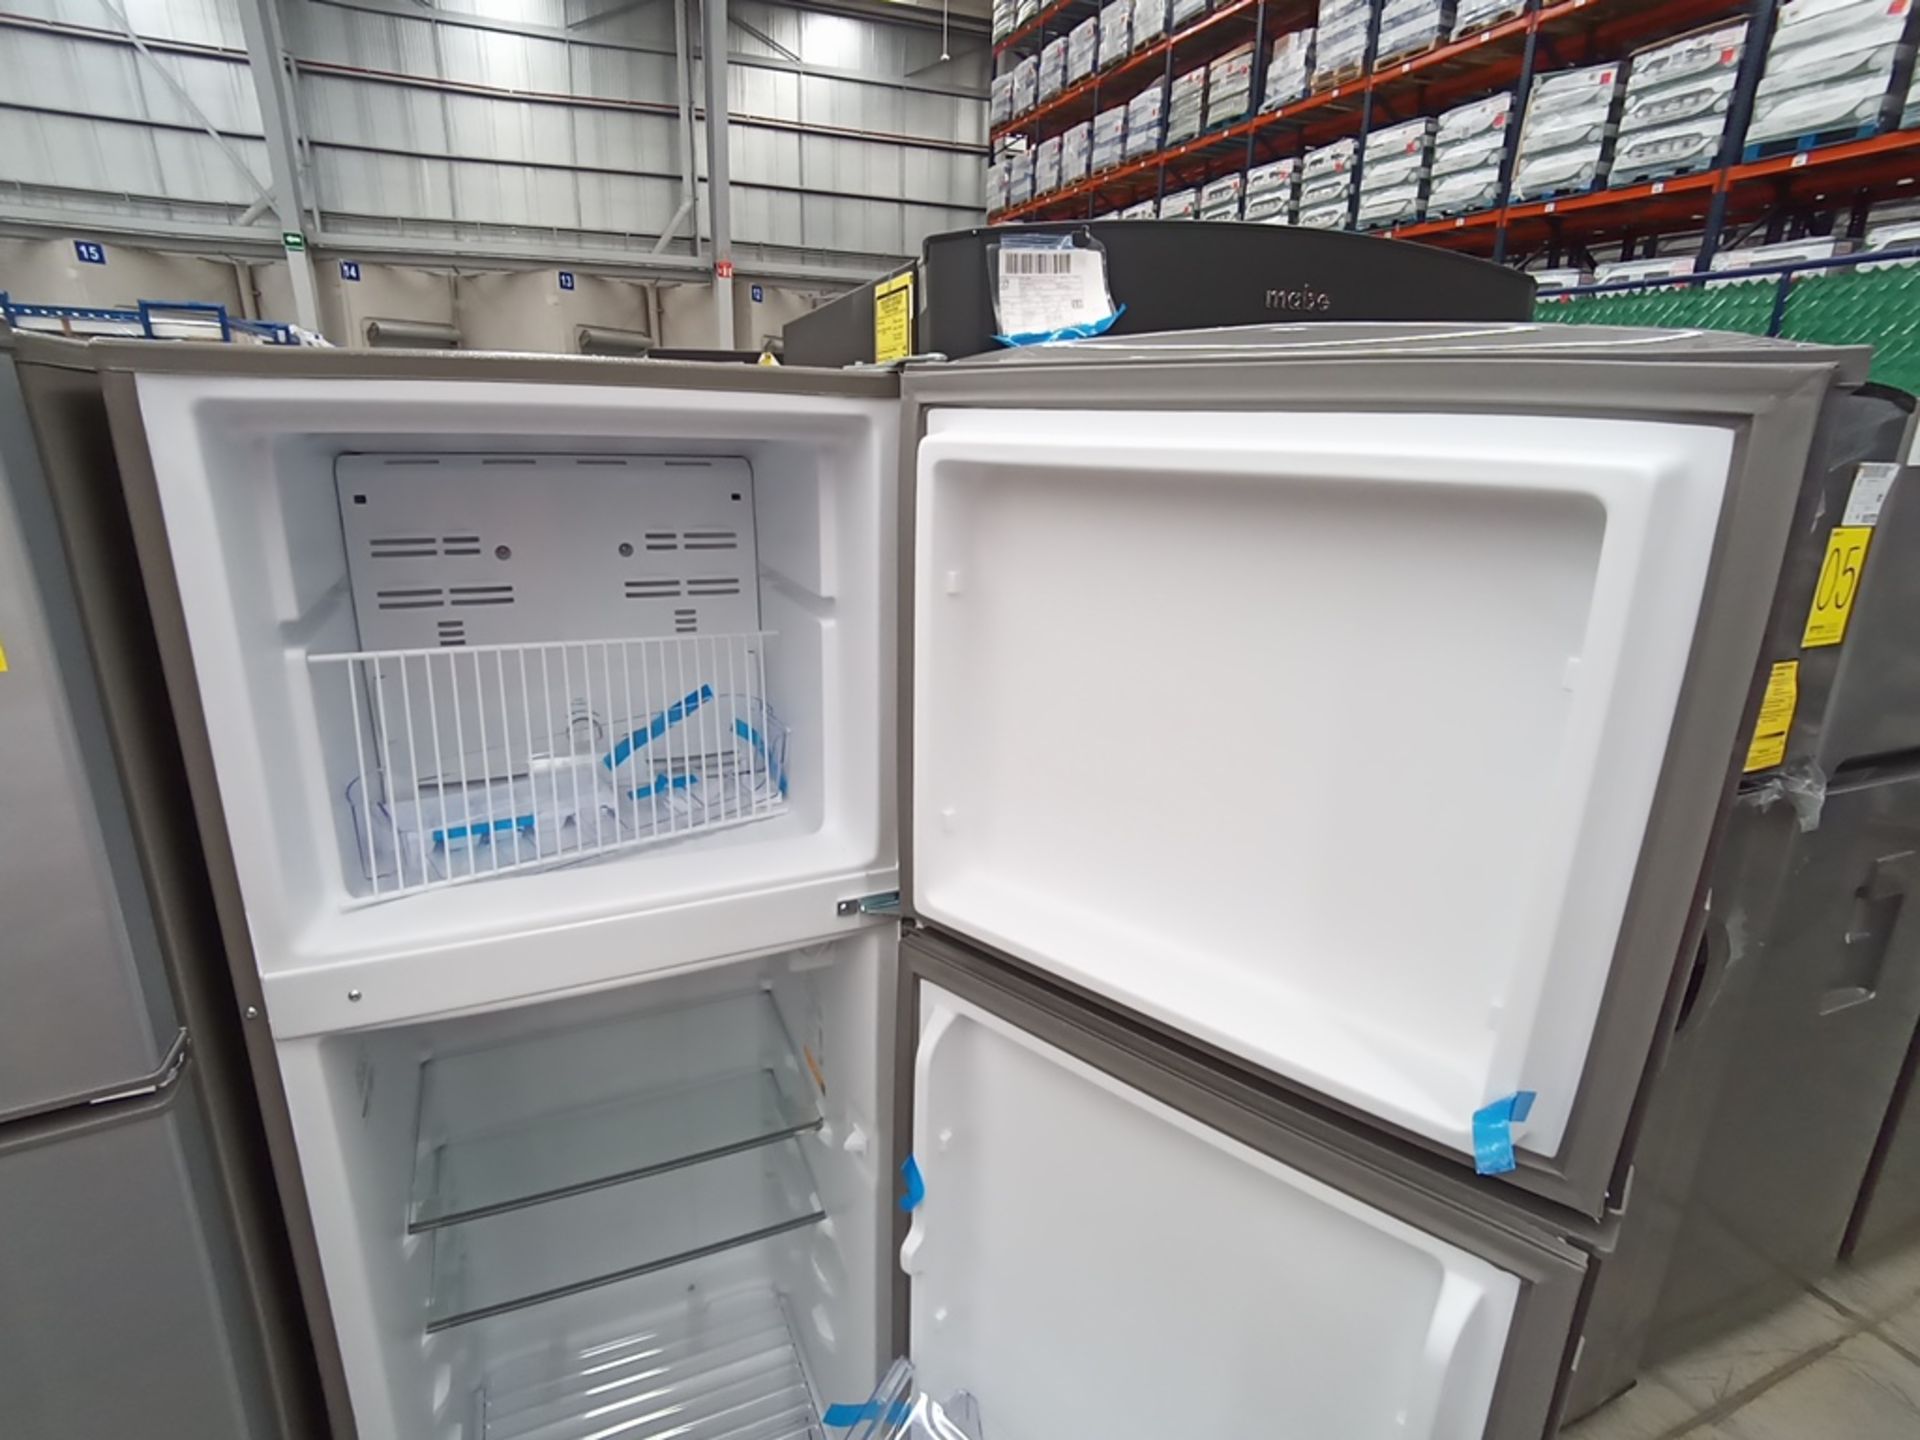 1 Refrigerador Marca Acros, Modelo AT091FG, Serie VRA3383587, Color Gris con Estampado. Golpeado. F - Image 23 of 30